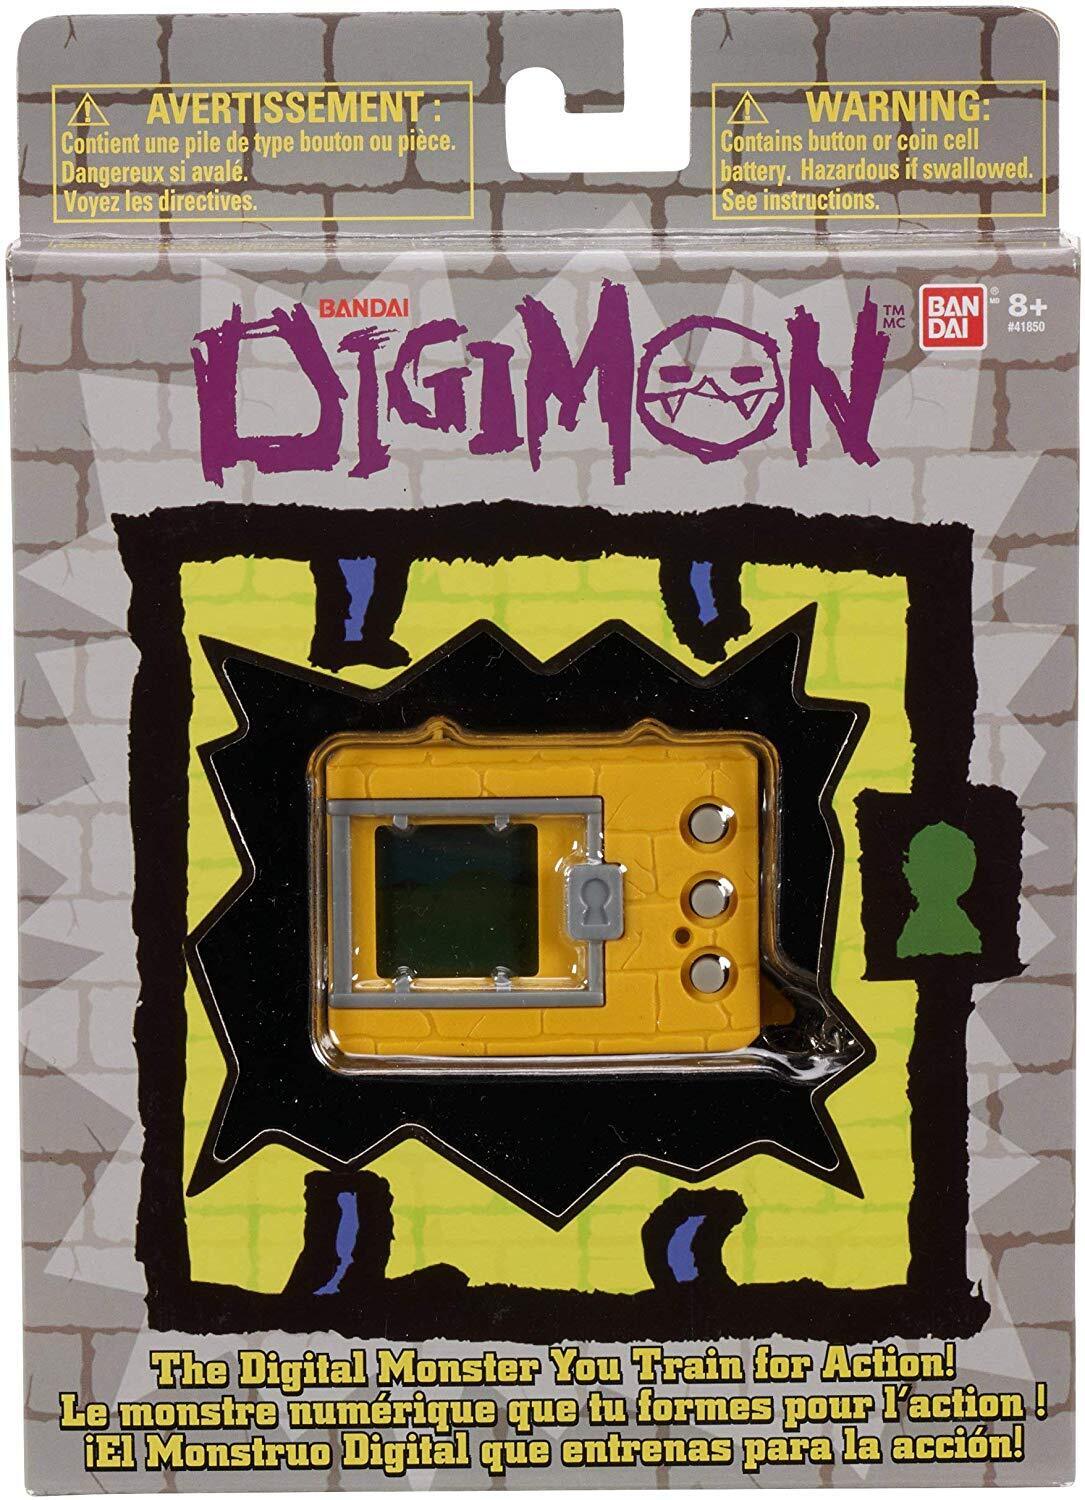 Bandai Digimon Original Digivice Virtual Pet Monster Handheld Game - Yellow